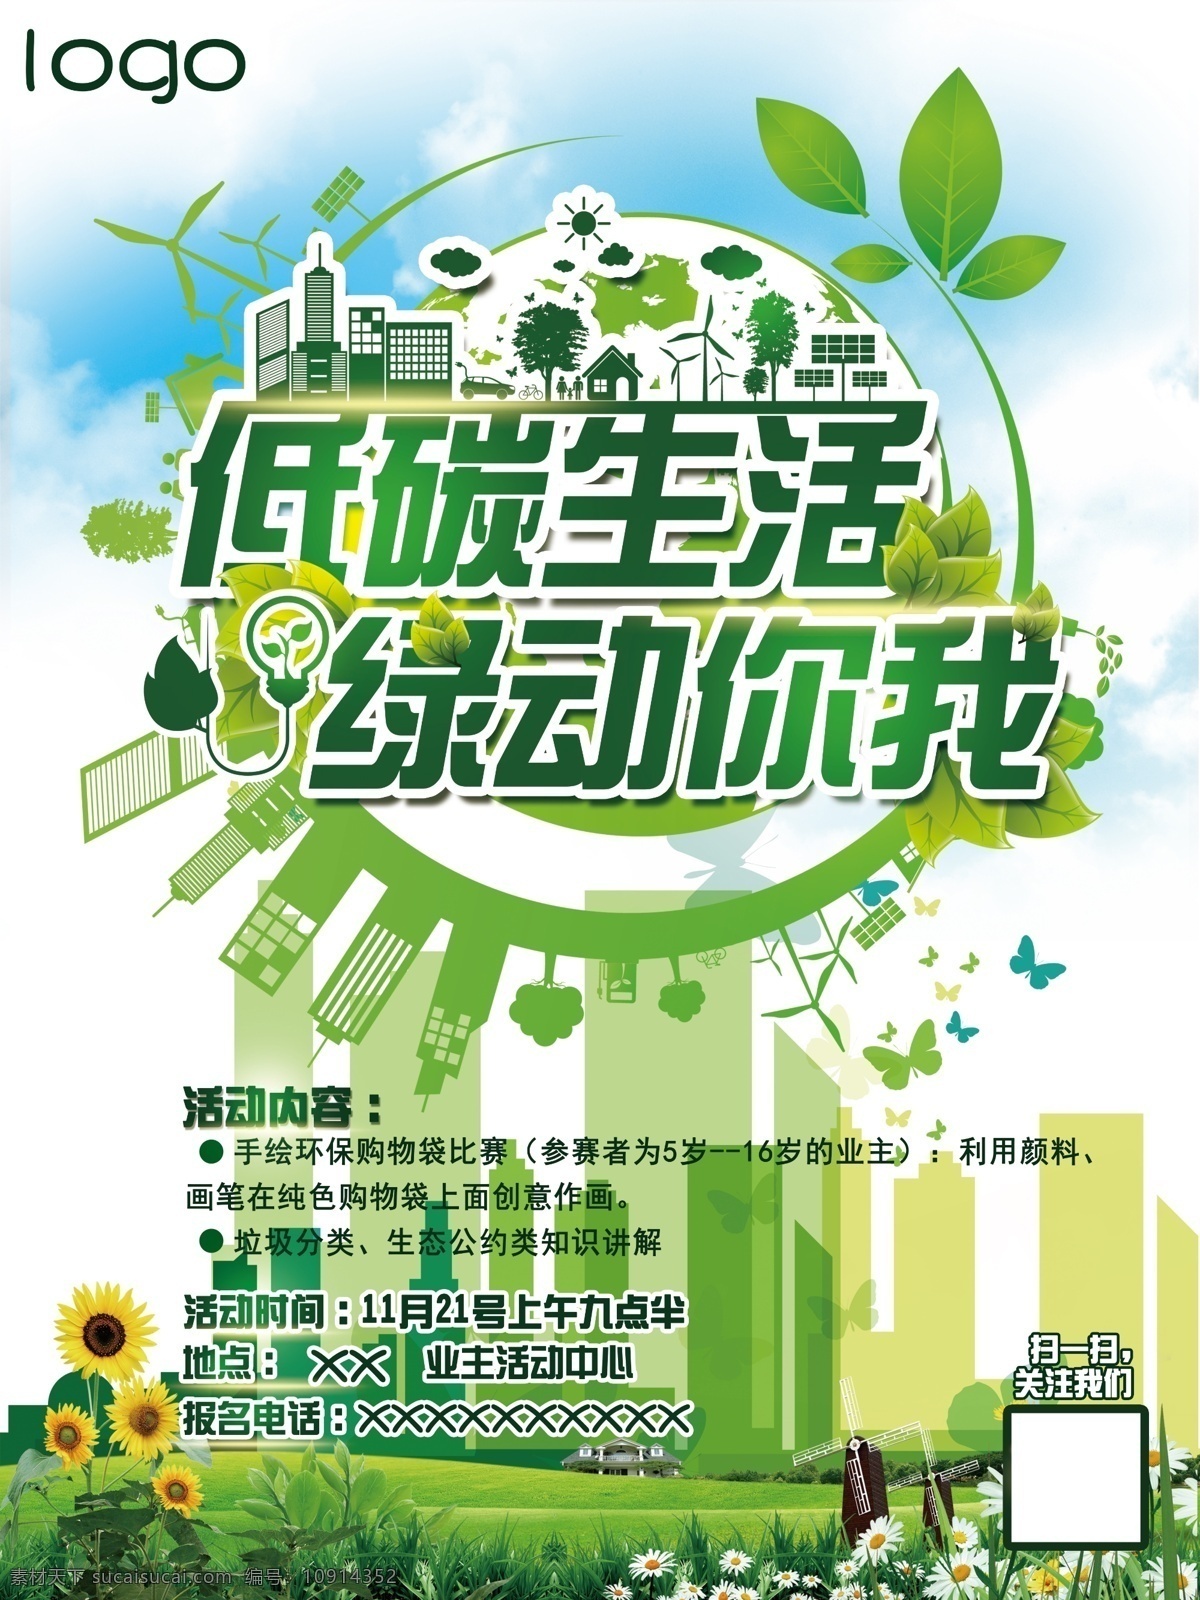 环保活动海报 环保 环保海报 低碳 环保素材 环保广告 环保创意 环保x展架 环保易拉宝 白色